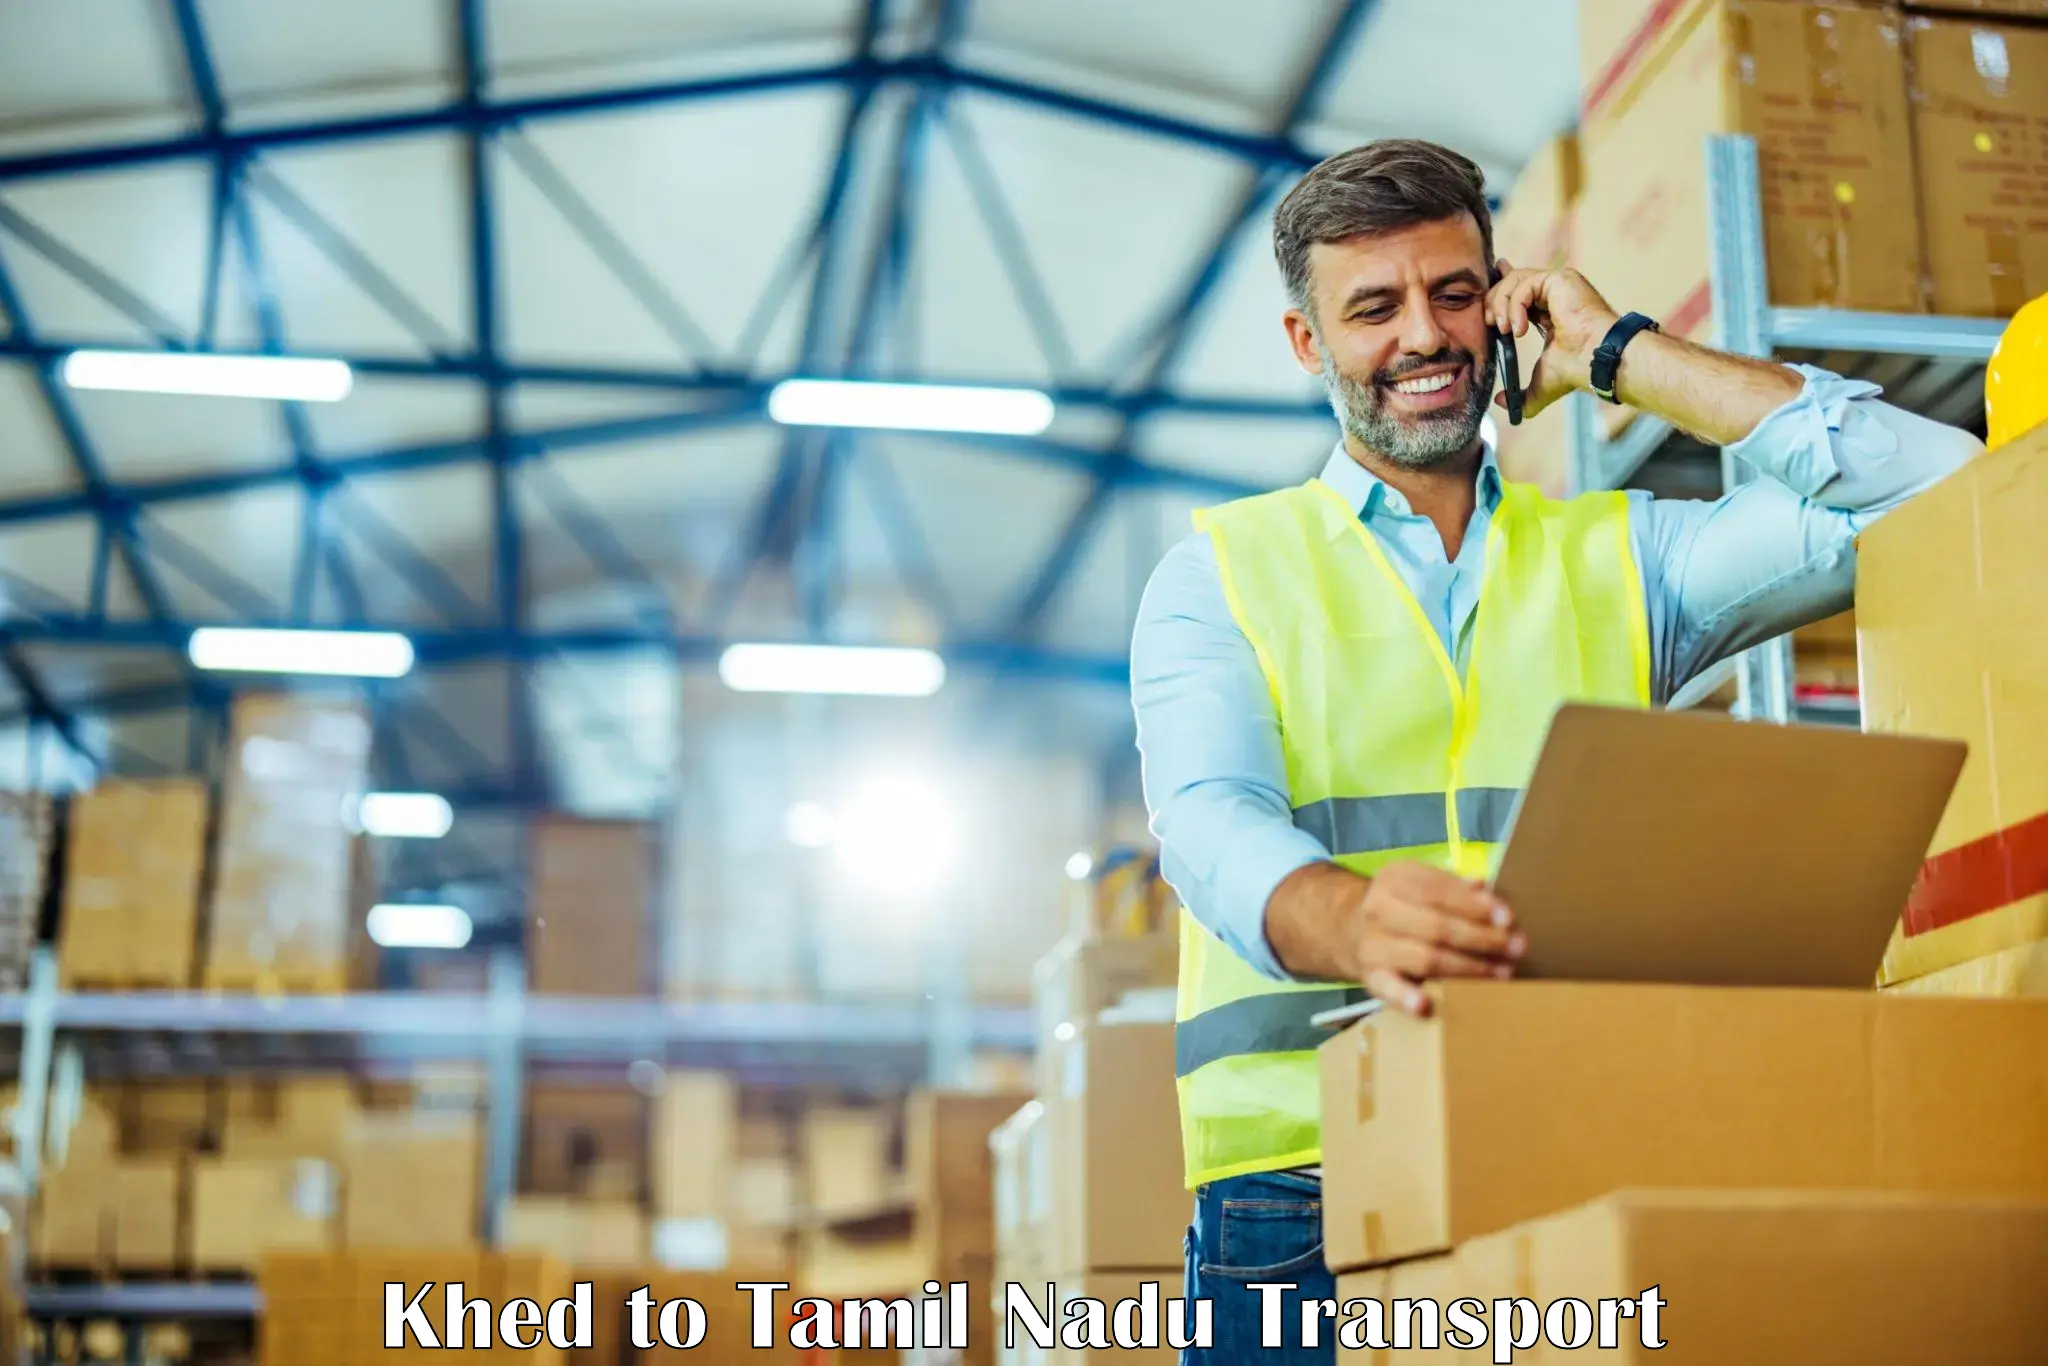 Logistics transportation services Khed to Peravurani